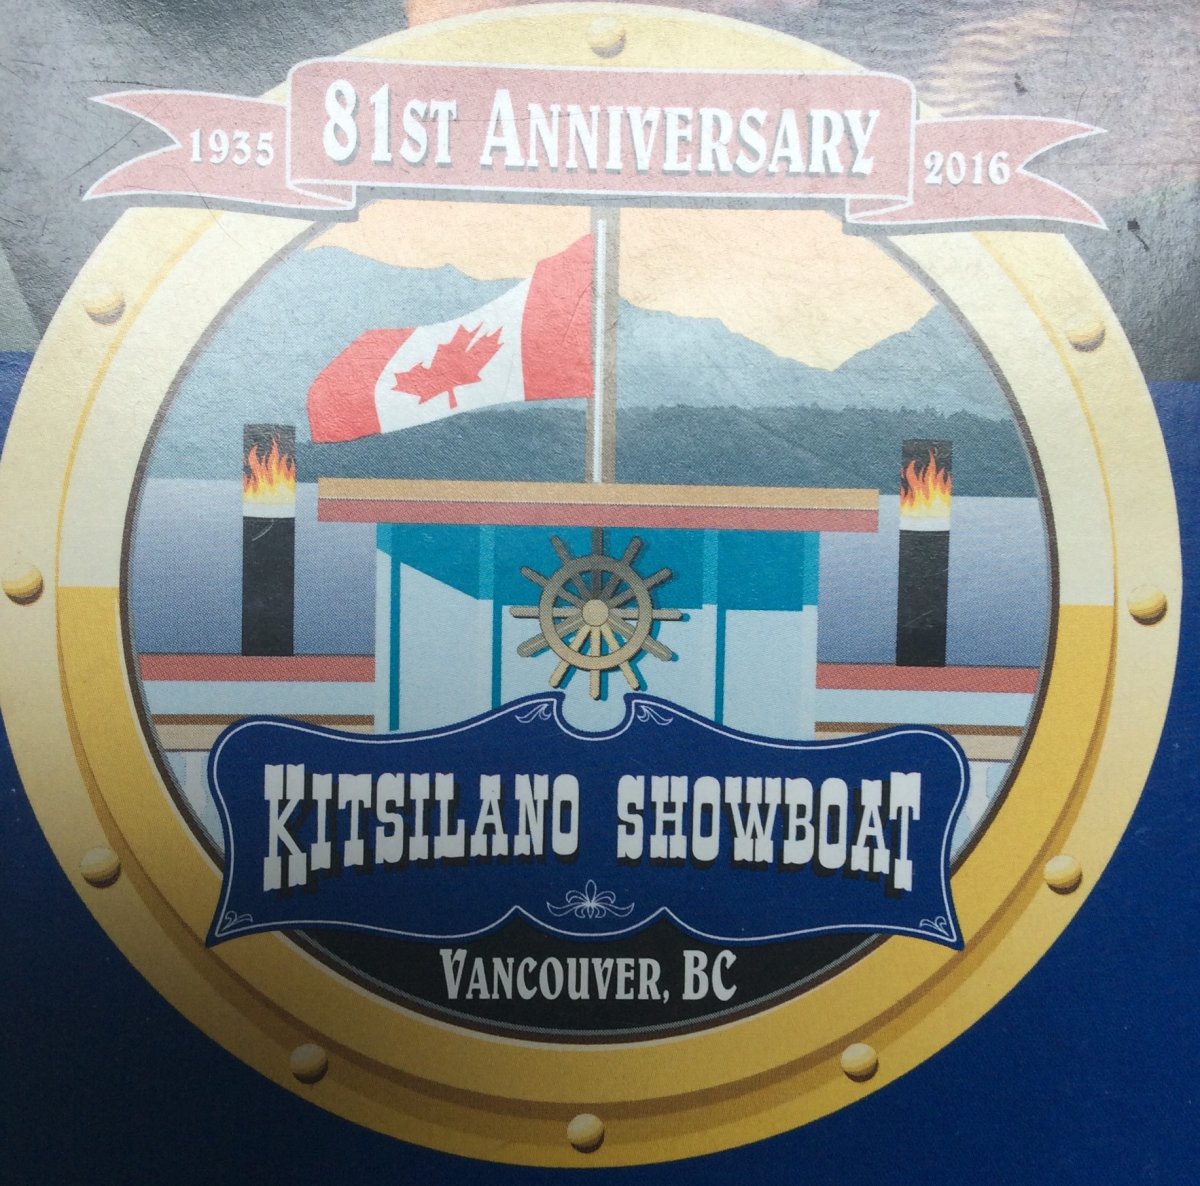 Kitsilano Showboat - image